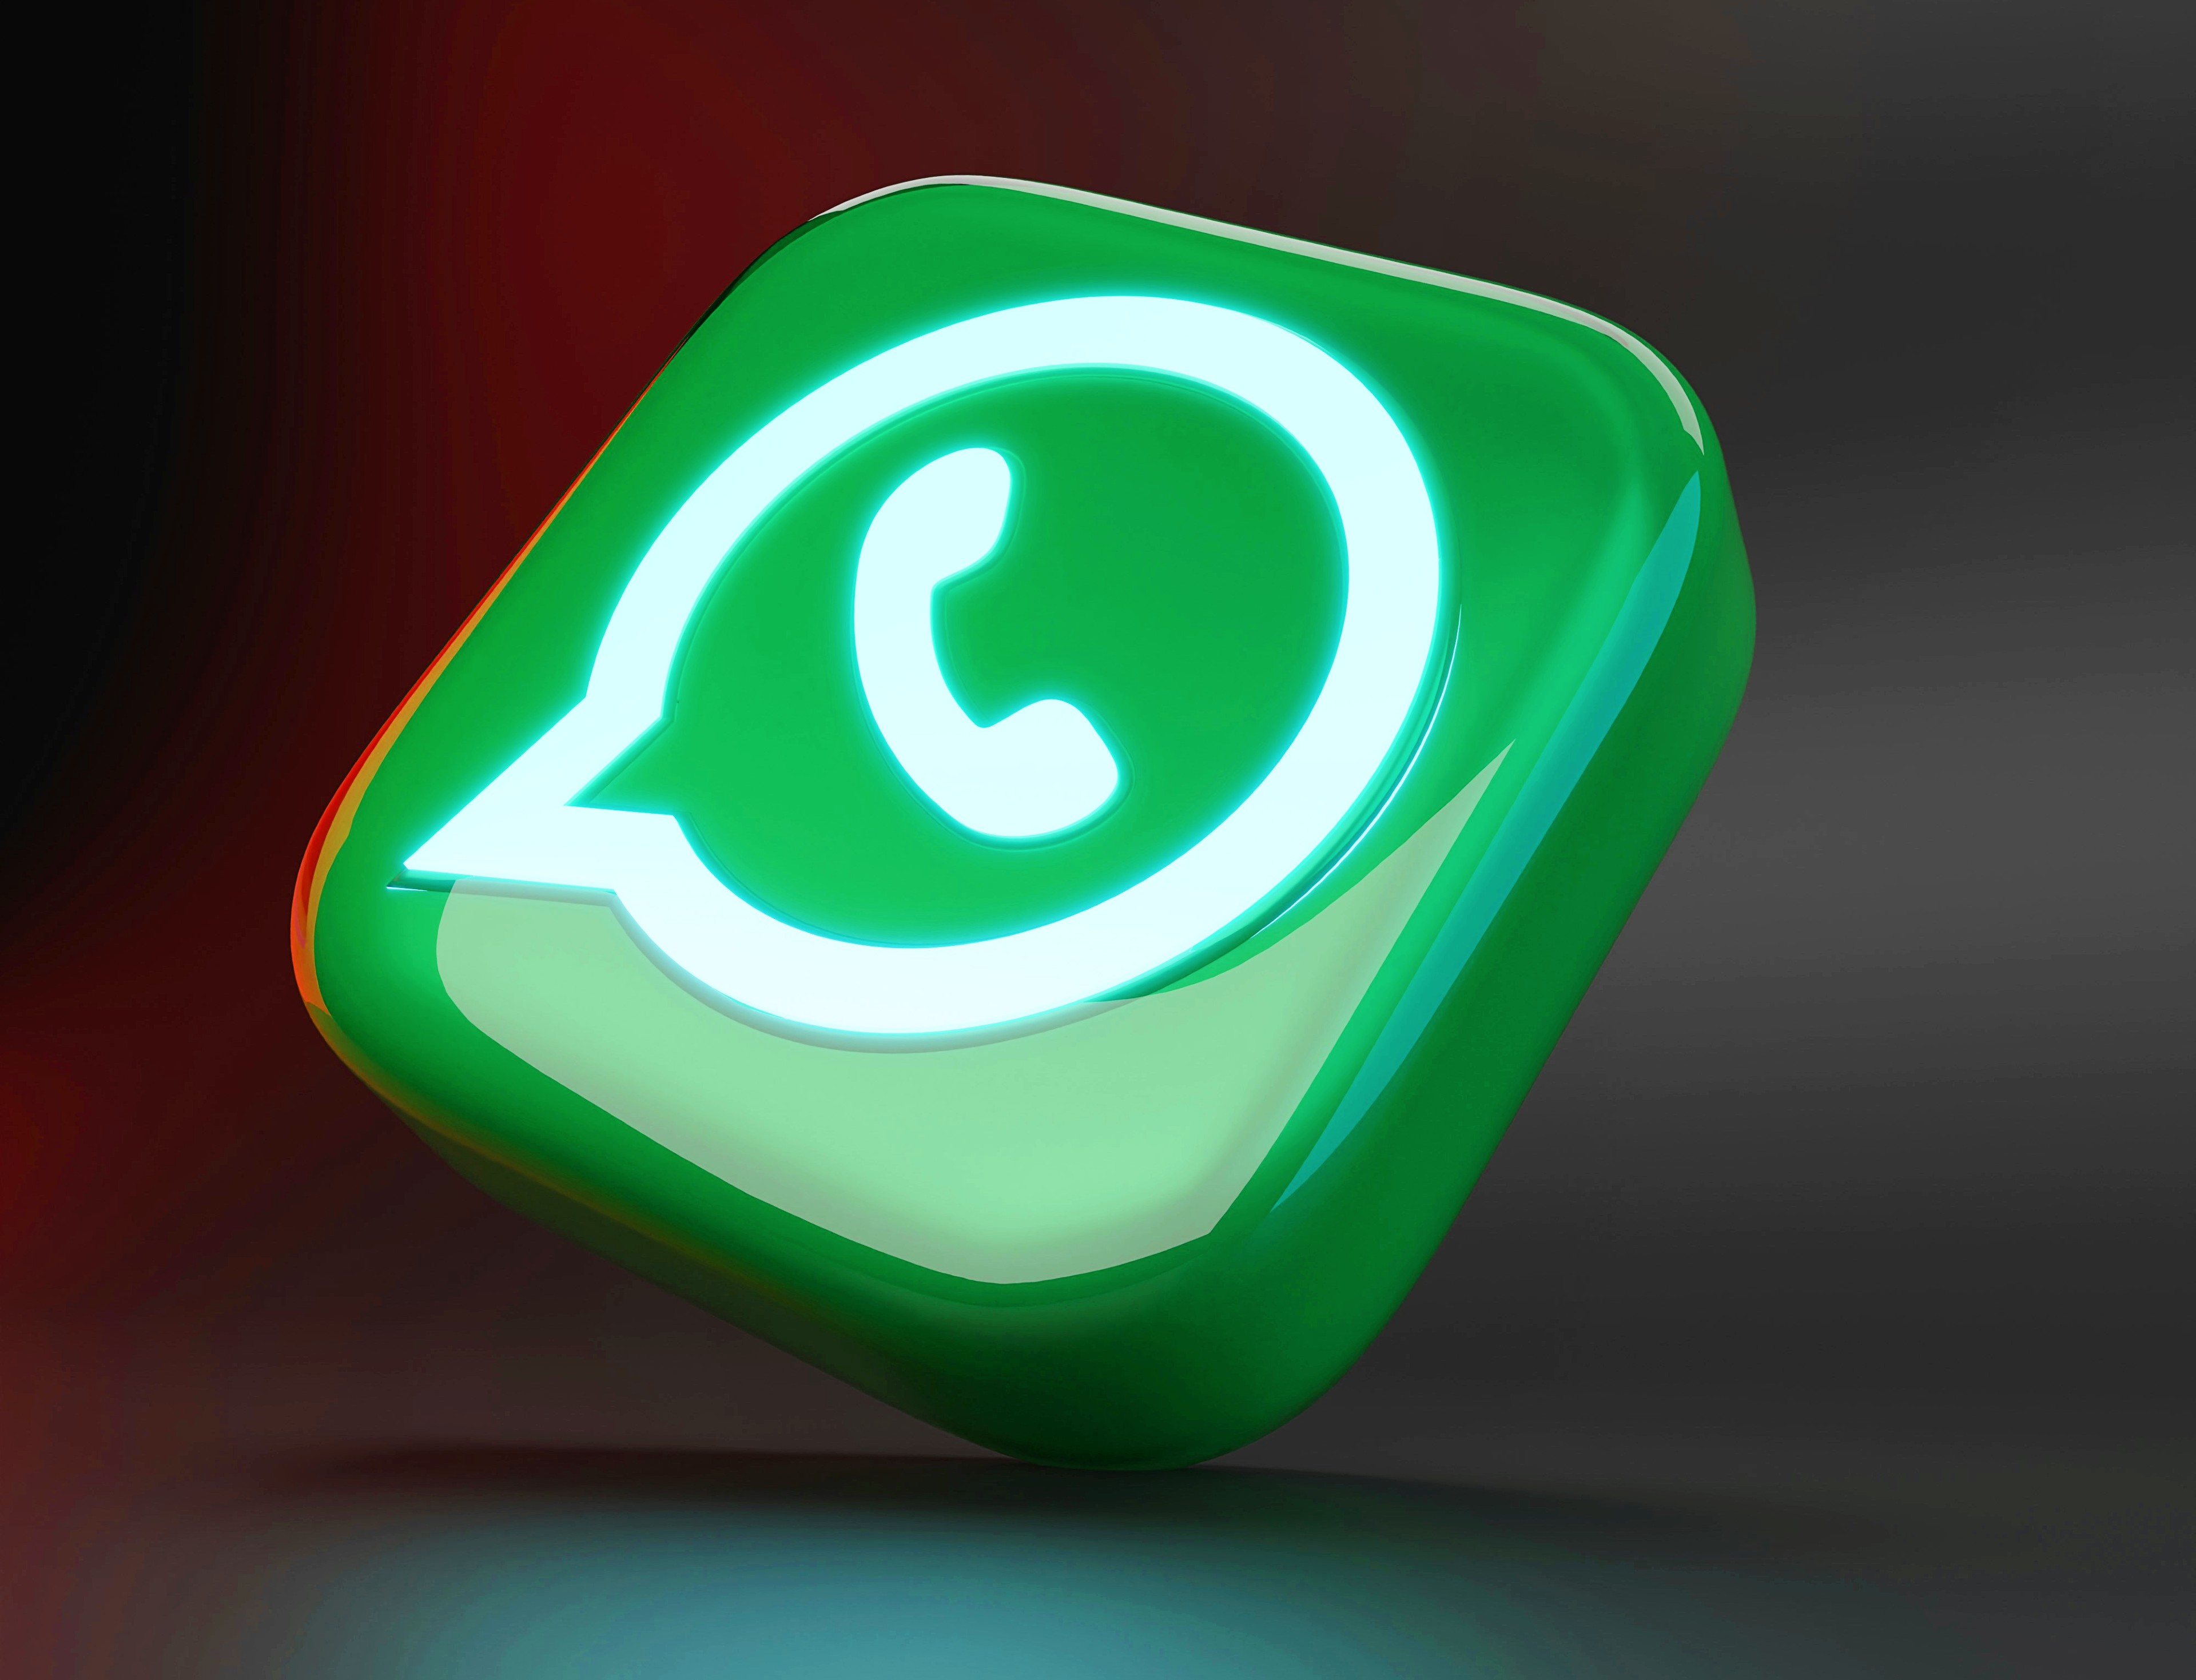 WhatsApp è dotato di una funzionalità straordinaria: chatta con utenti di altre app